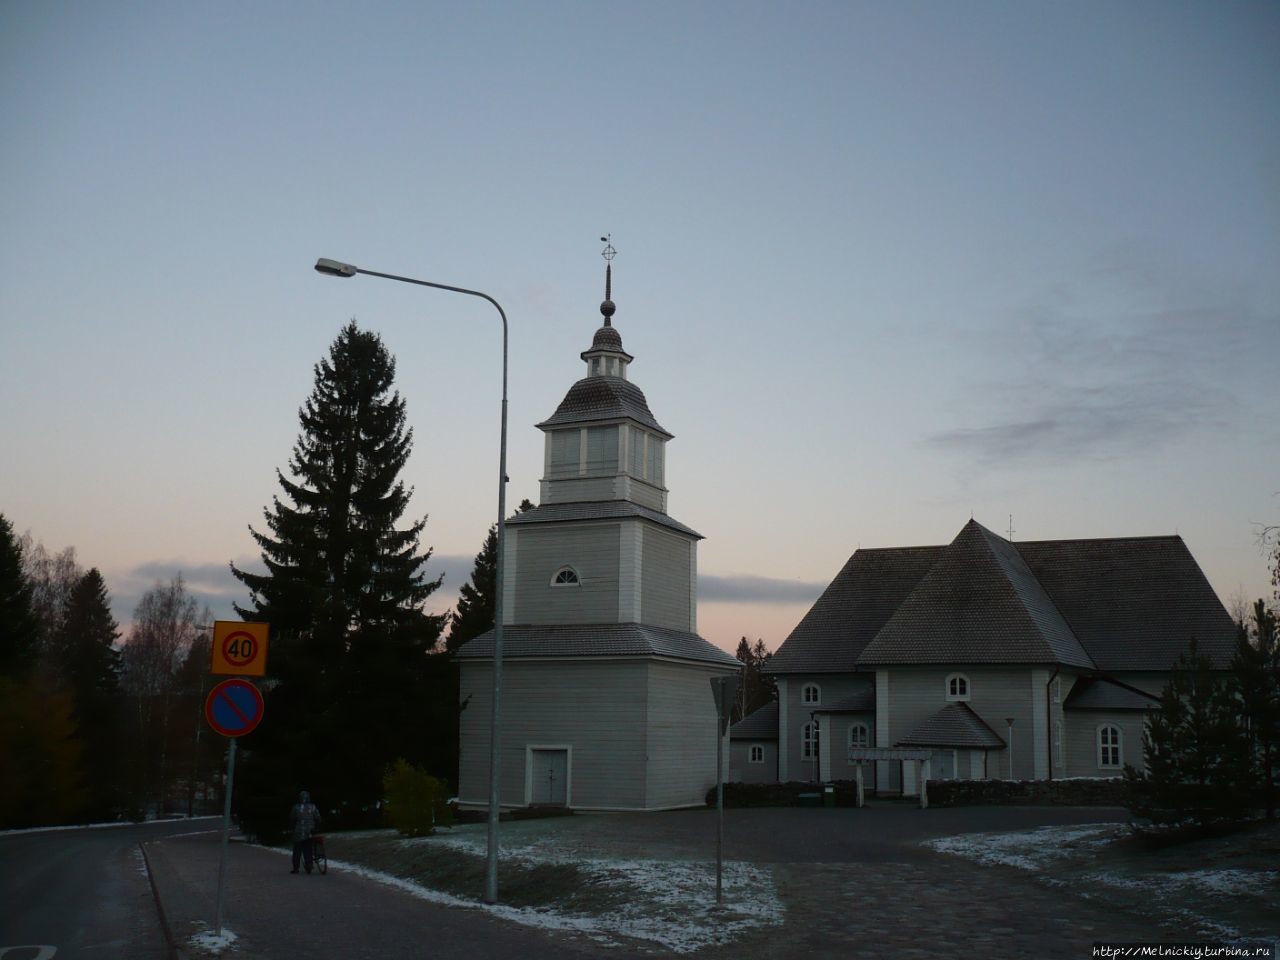 Церковь Ристиины / Church of Ristiina